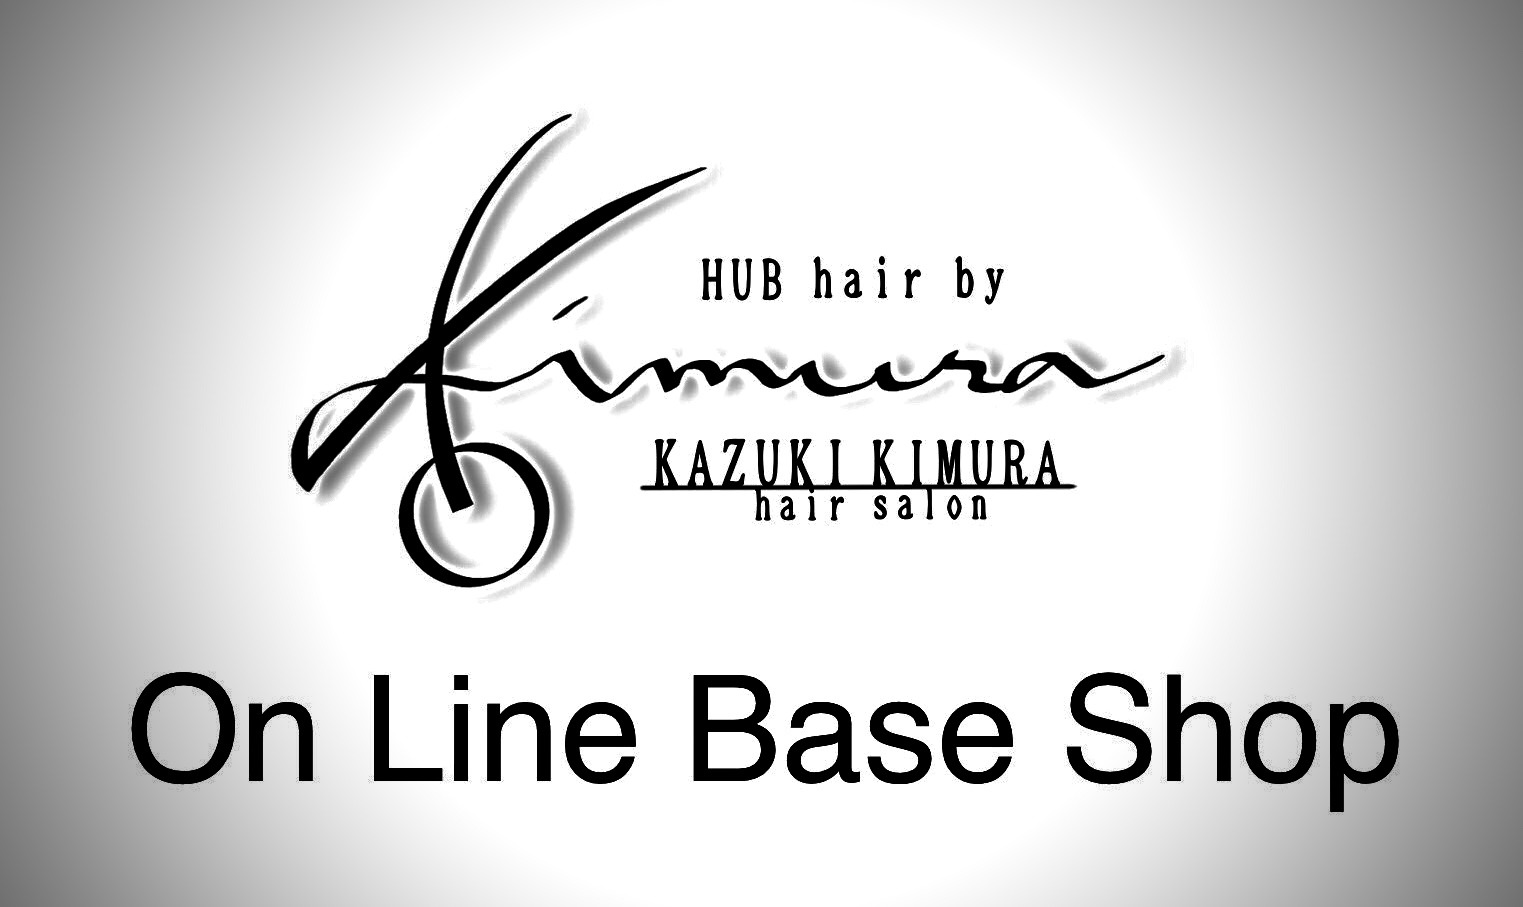 KAZUKI KIMURA HAIR SALON ONE-LINE BASE SHOP